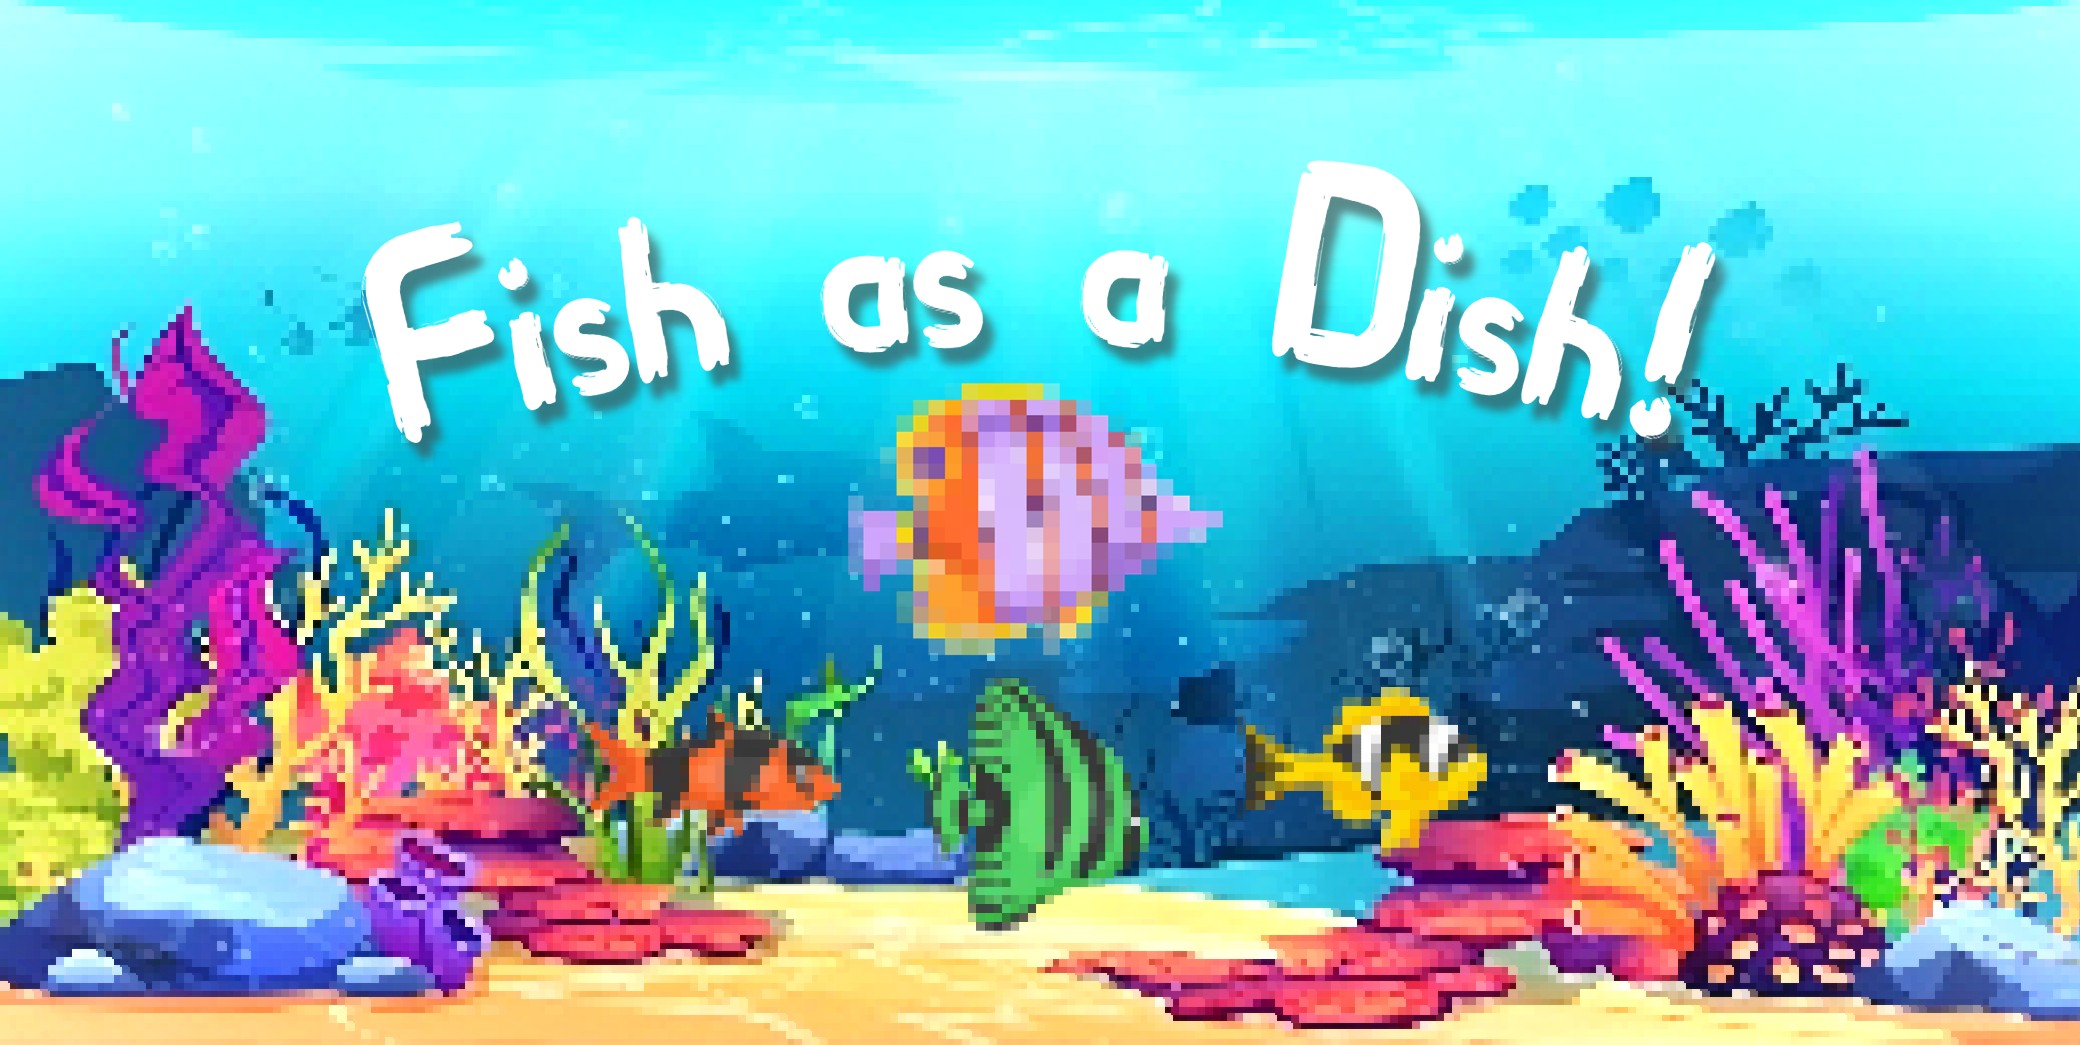 Fish as a Dish